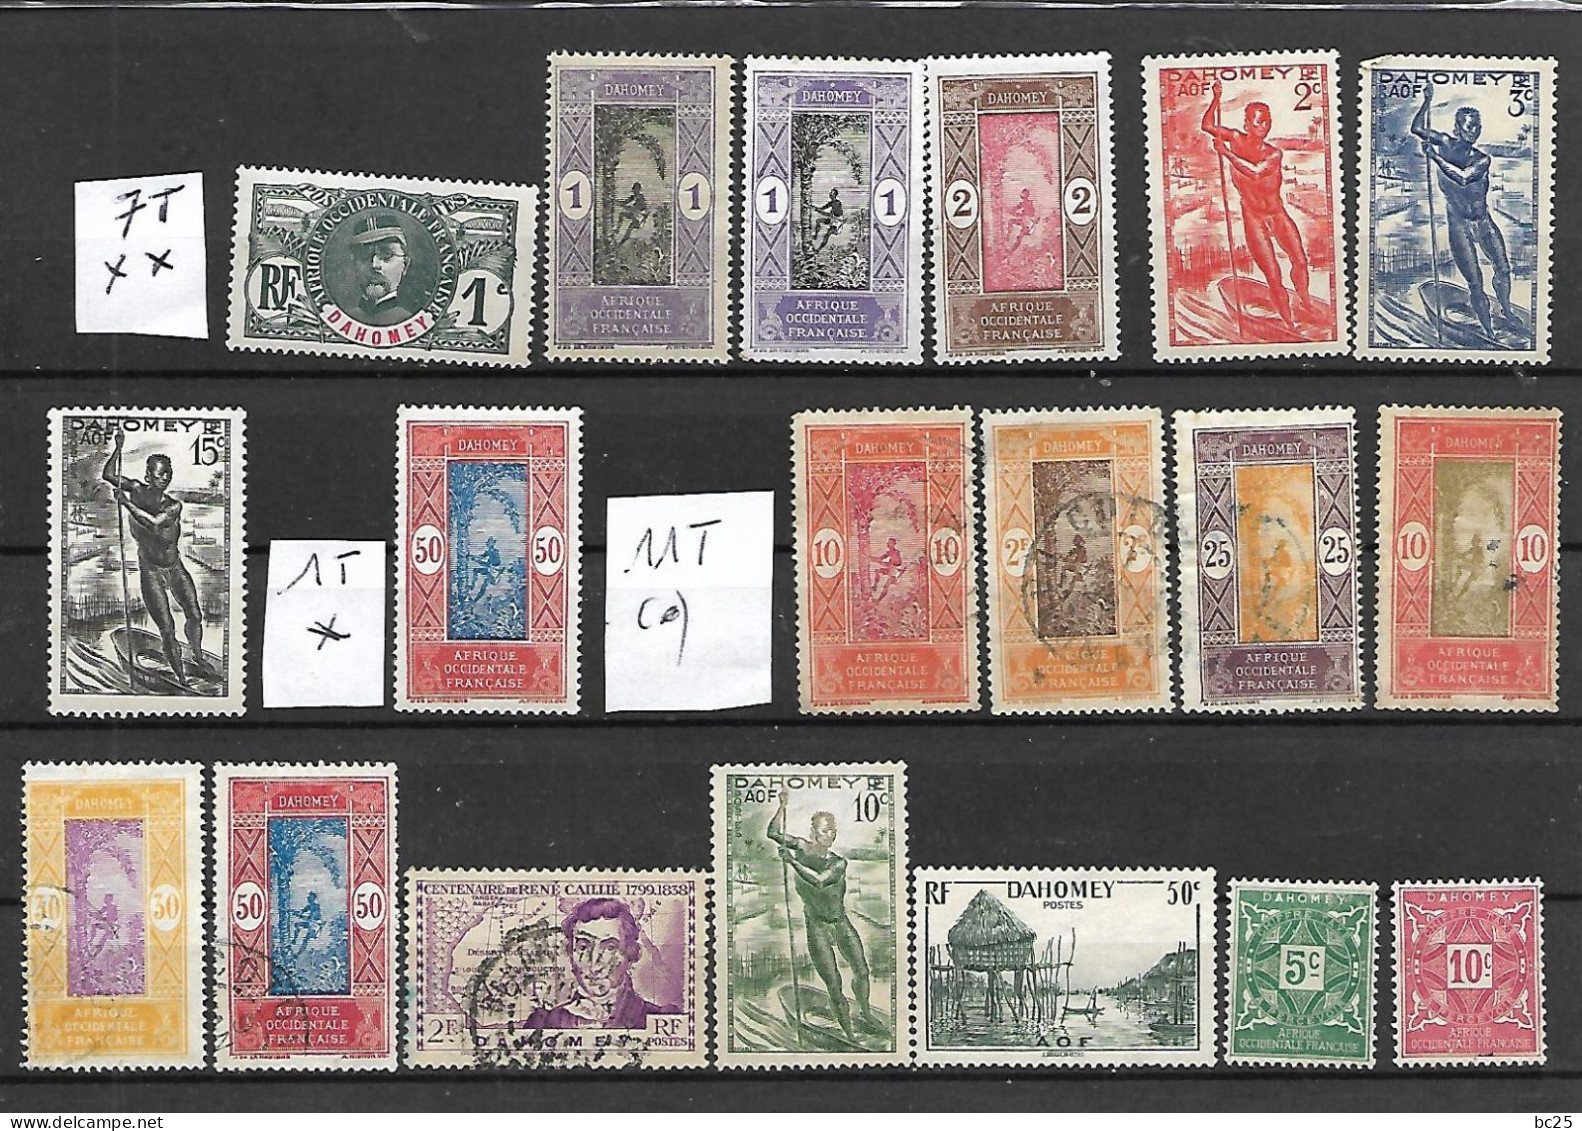 DAHOMEY-42 TRES BEAUX TIMBRES DONT 8 NEUFS * * AVEC BLOC - 3 NEUF * ET 31 OBLITERES PAS EMINCES- DEPUIS 1906-07-3 SCANS - Used Stamps